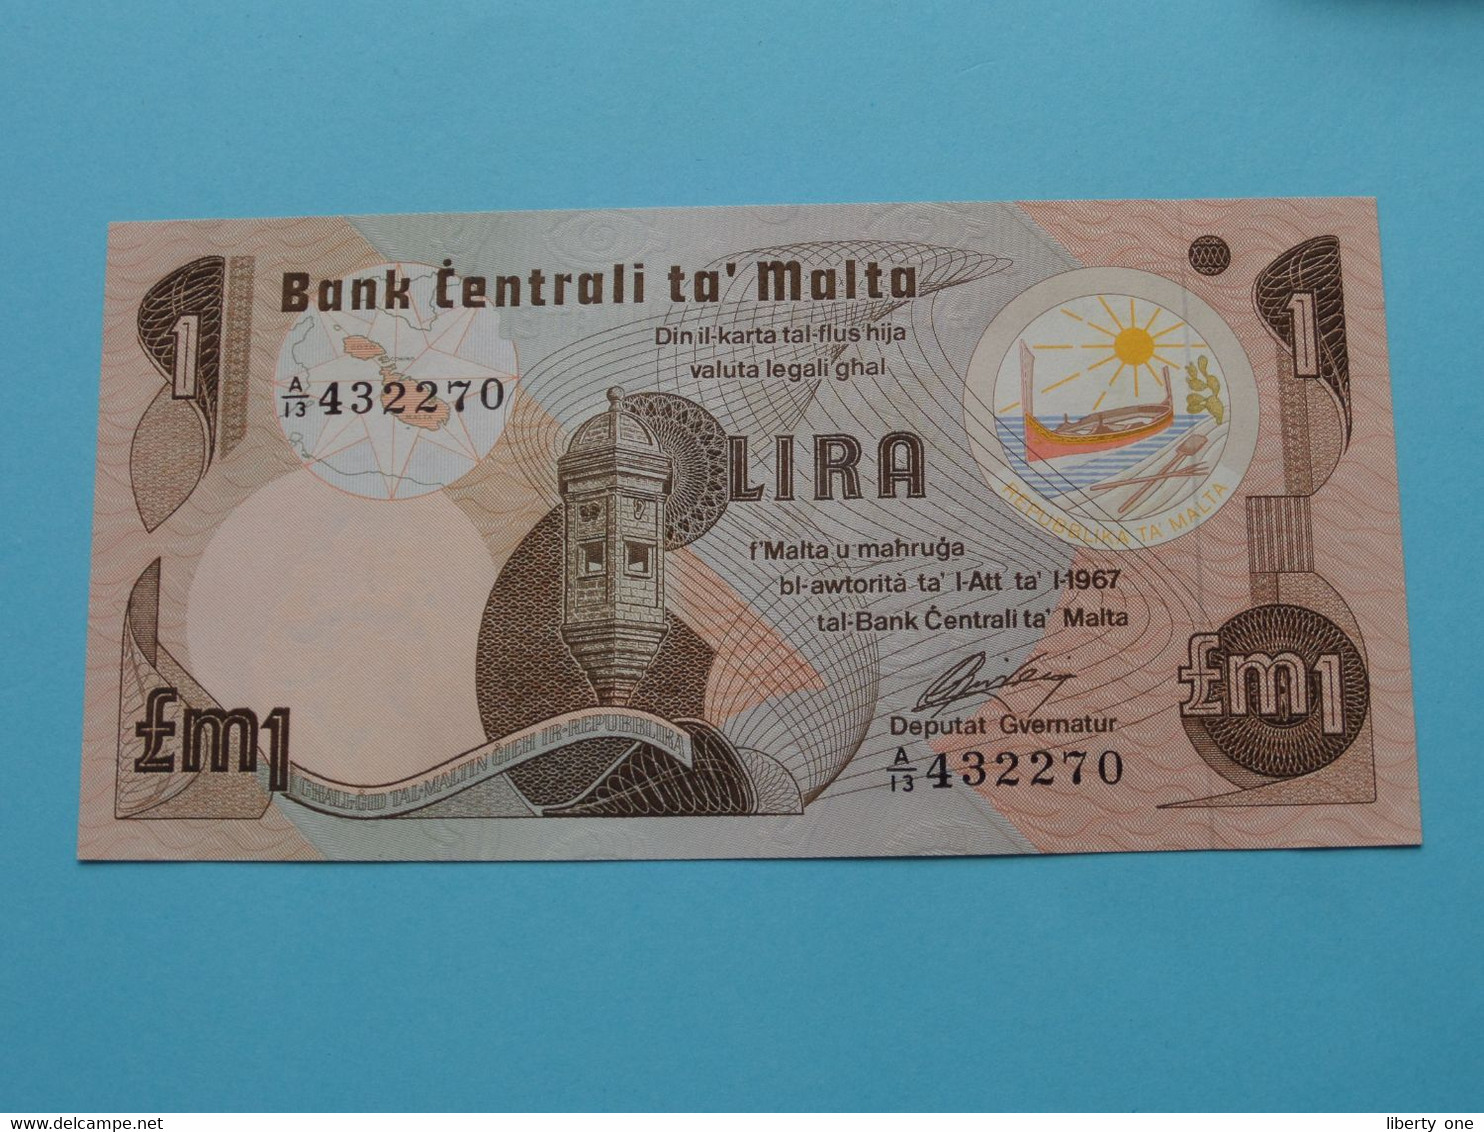 1 One Pound / Lira - 1967 ( A-13 432270 ) Bank Centrali Ta' Malta ( For Grade, Please See Photo ) UNC ! - Malta